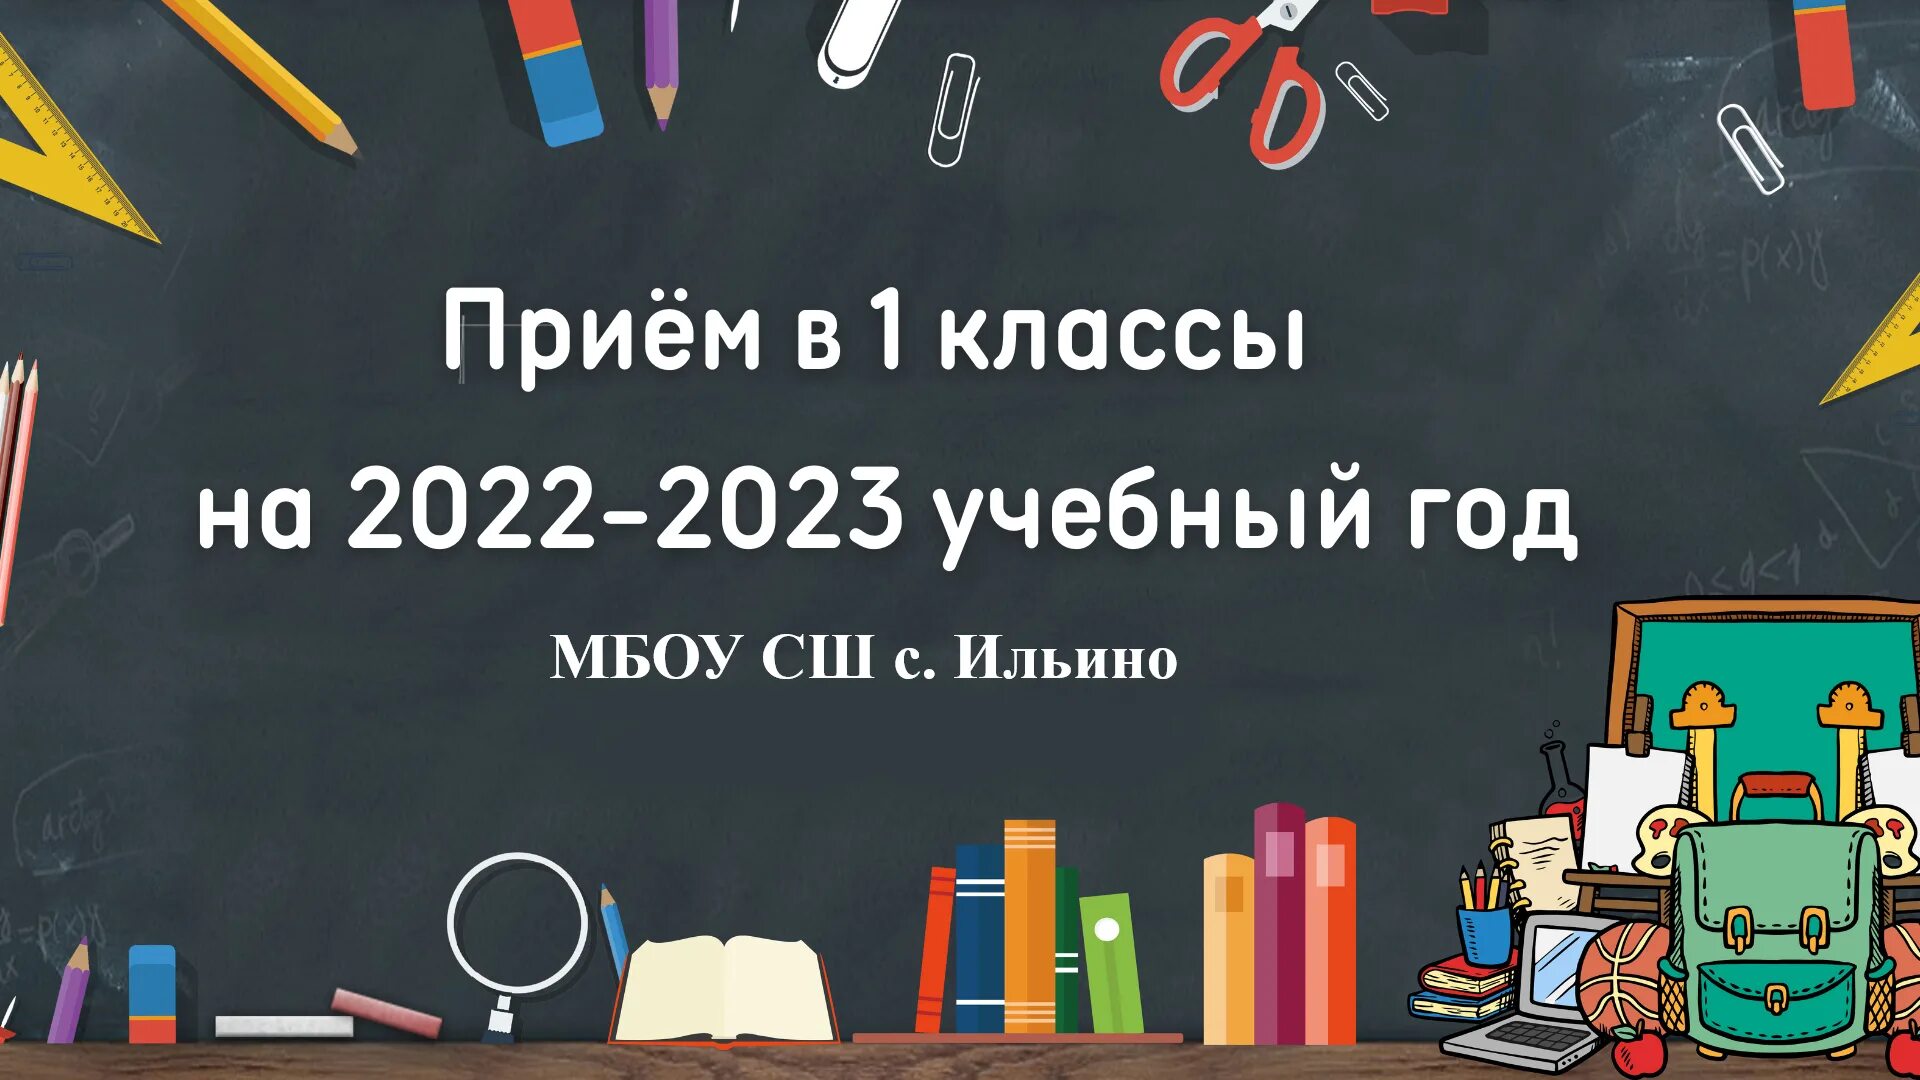 В течение 2022 2023 учебного года. Первый класс 2022. 2022-2023 Учебный год. Приём в первый класс 2022-2023. Учебный год 2023.